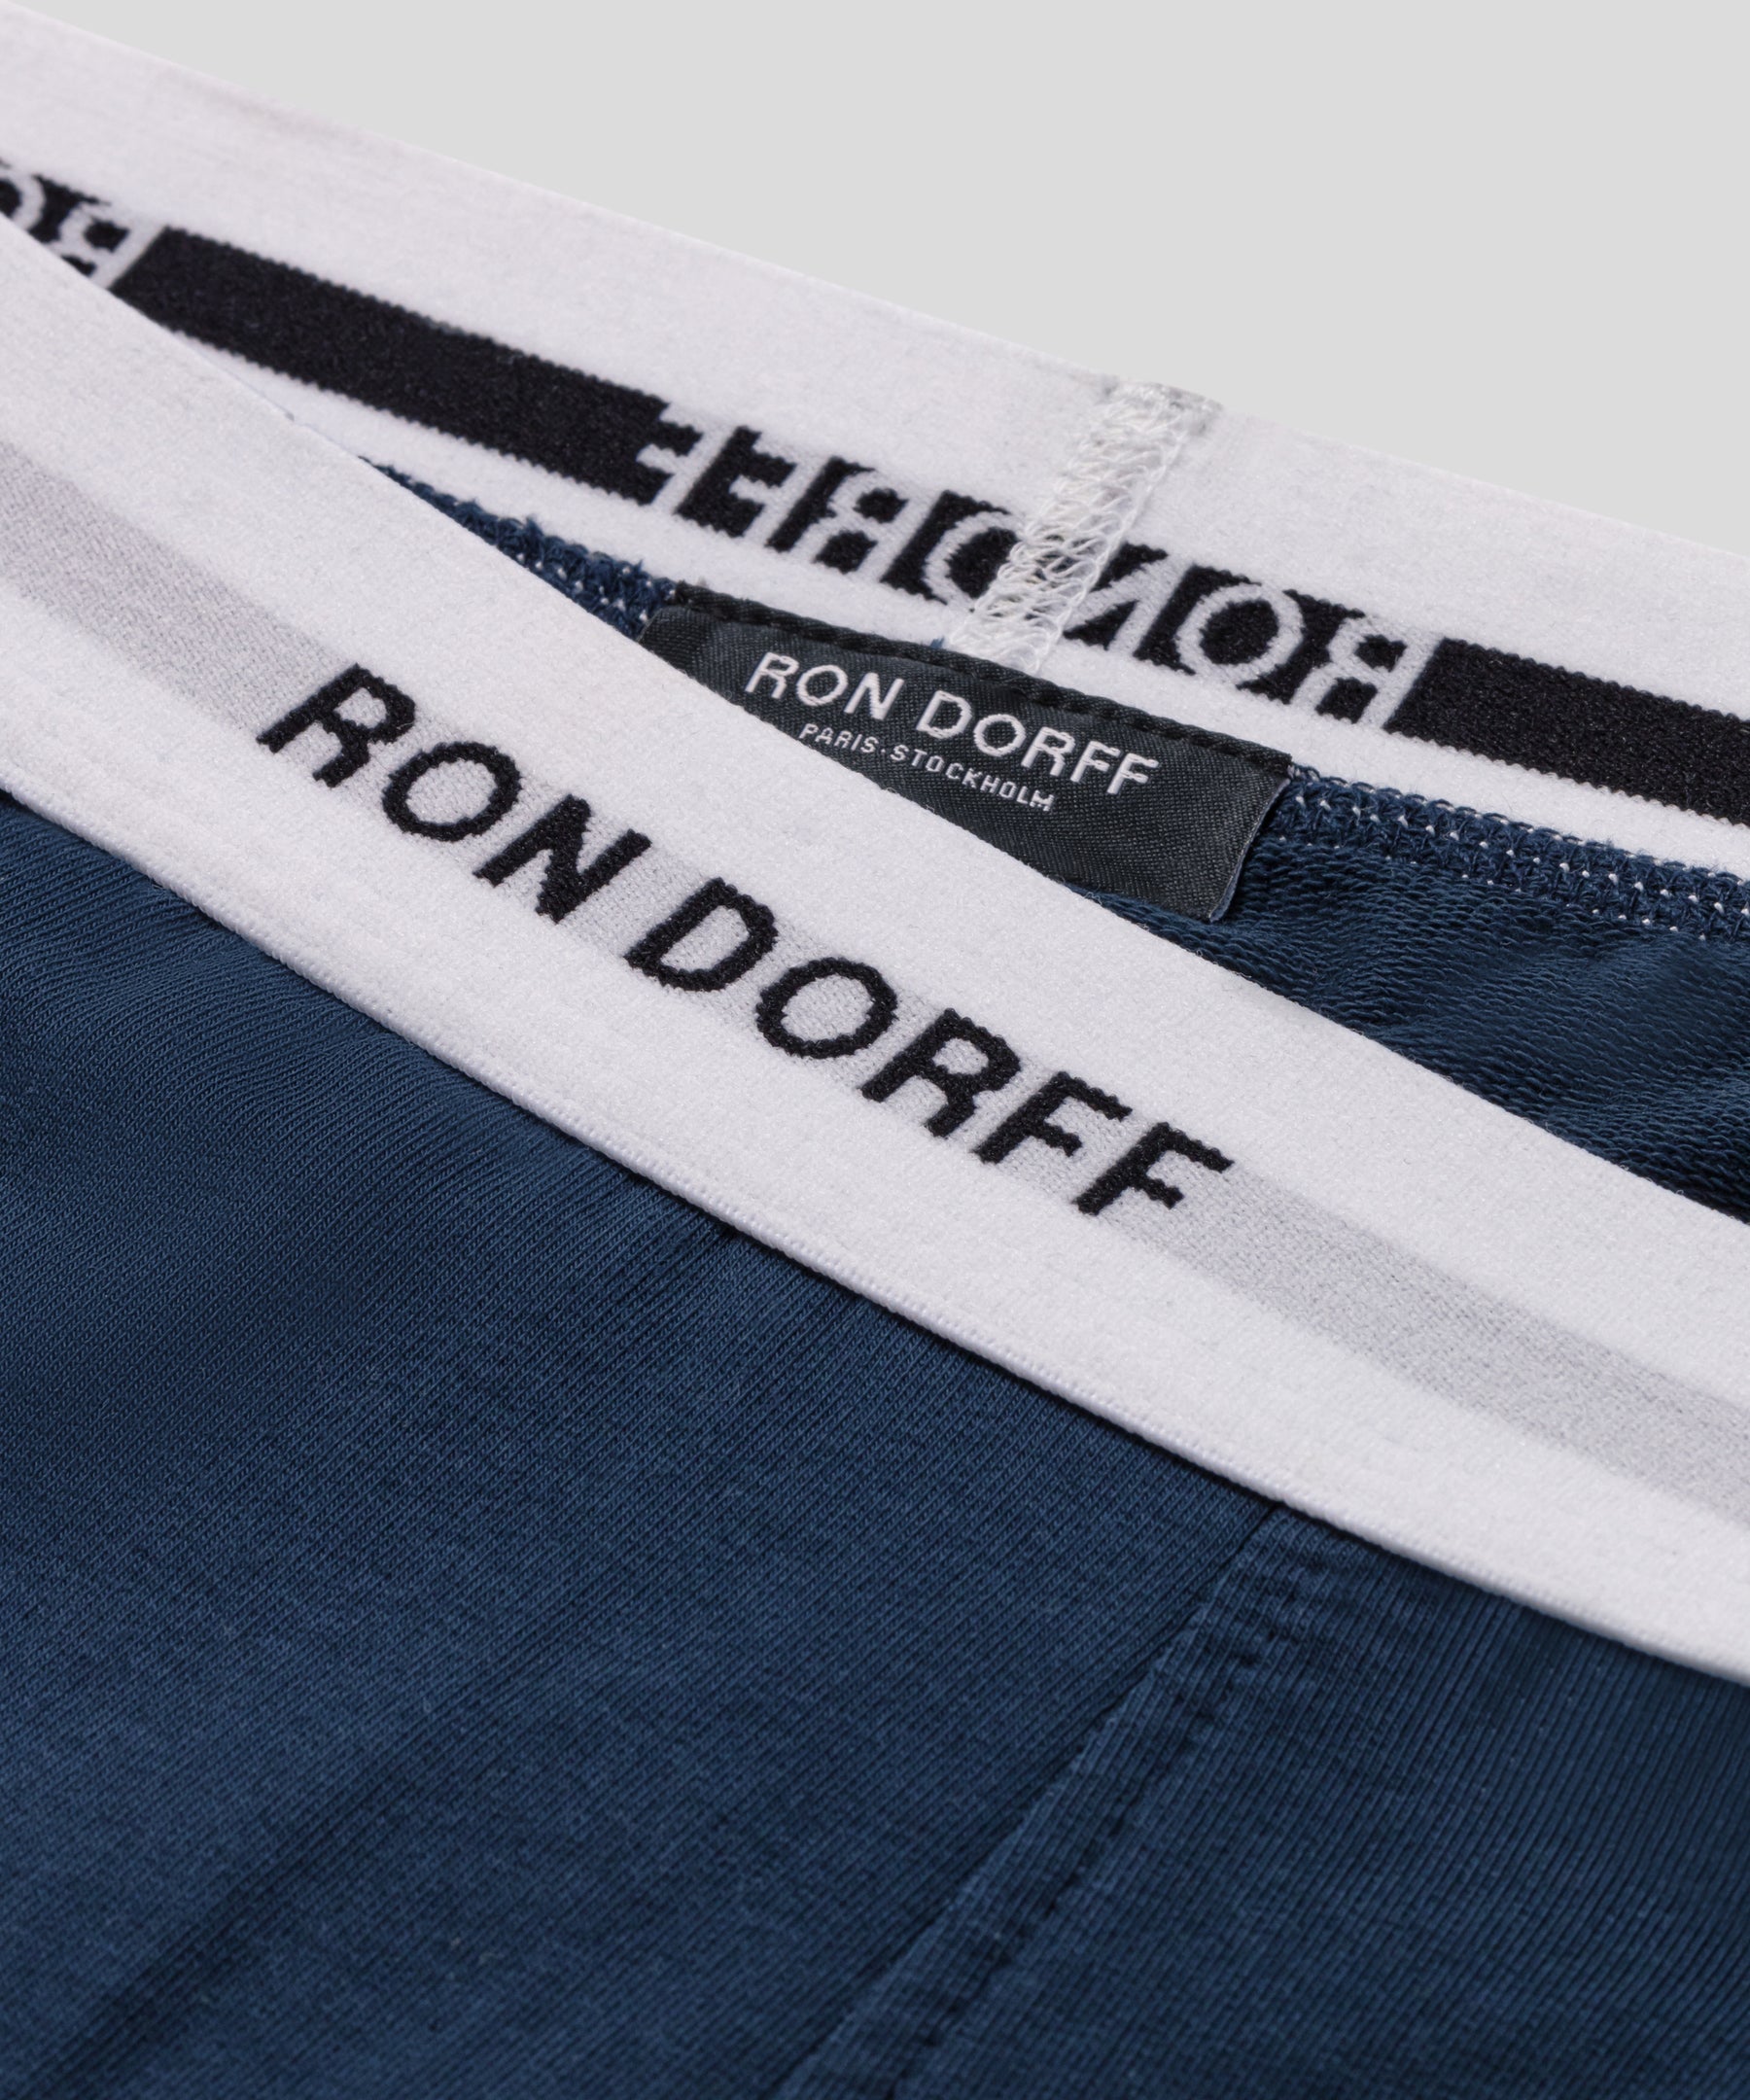 Short d'intérieur en coton à imprimés RON DORFF: Bleu marine